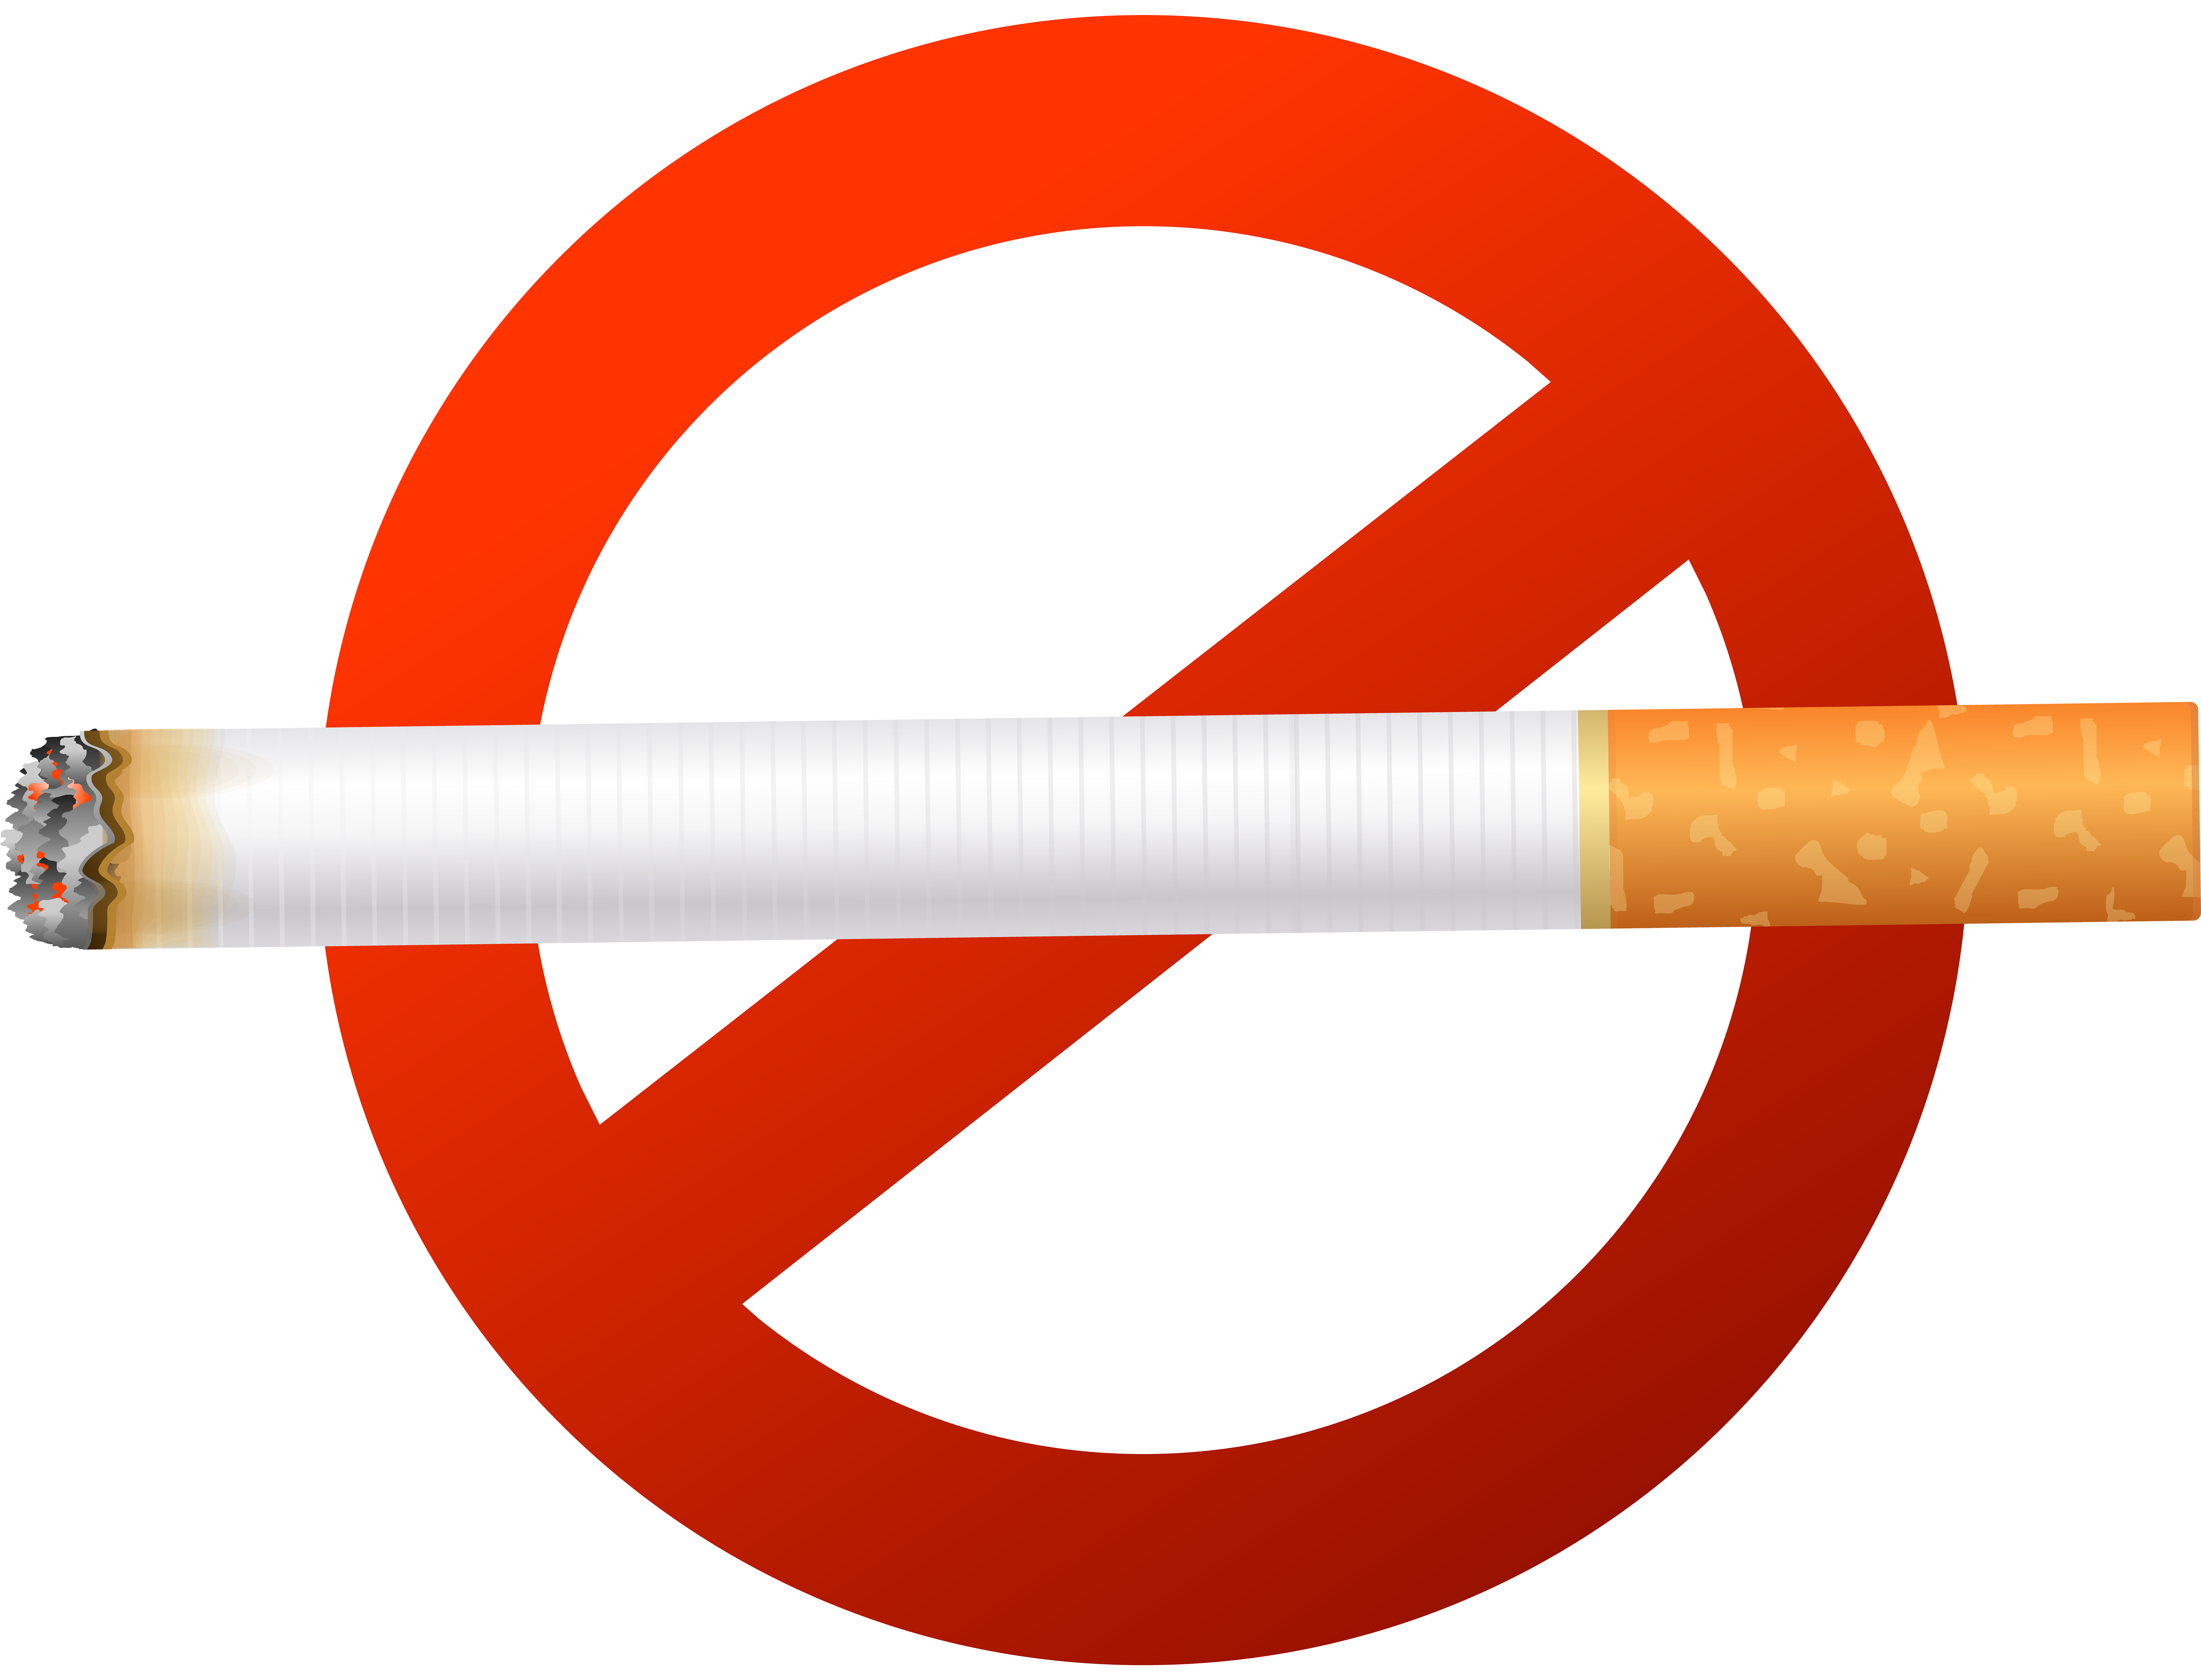 علامات لوقف التدخين